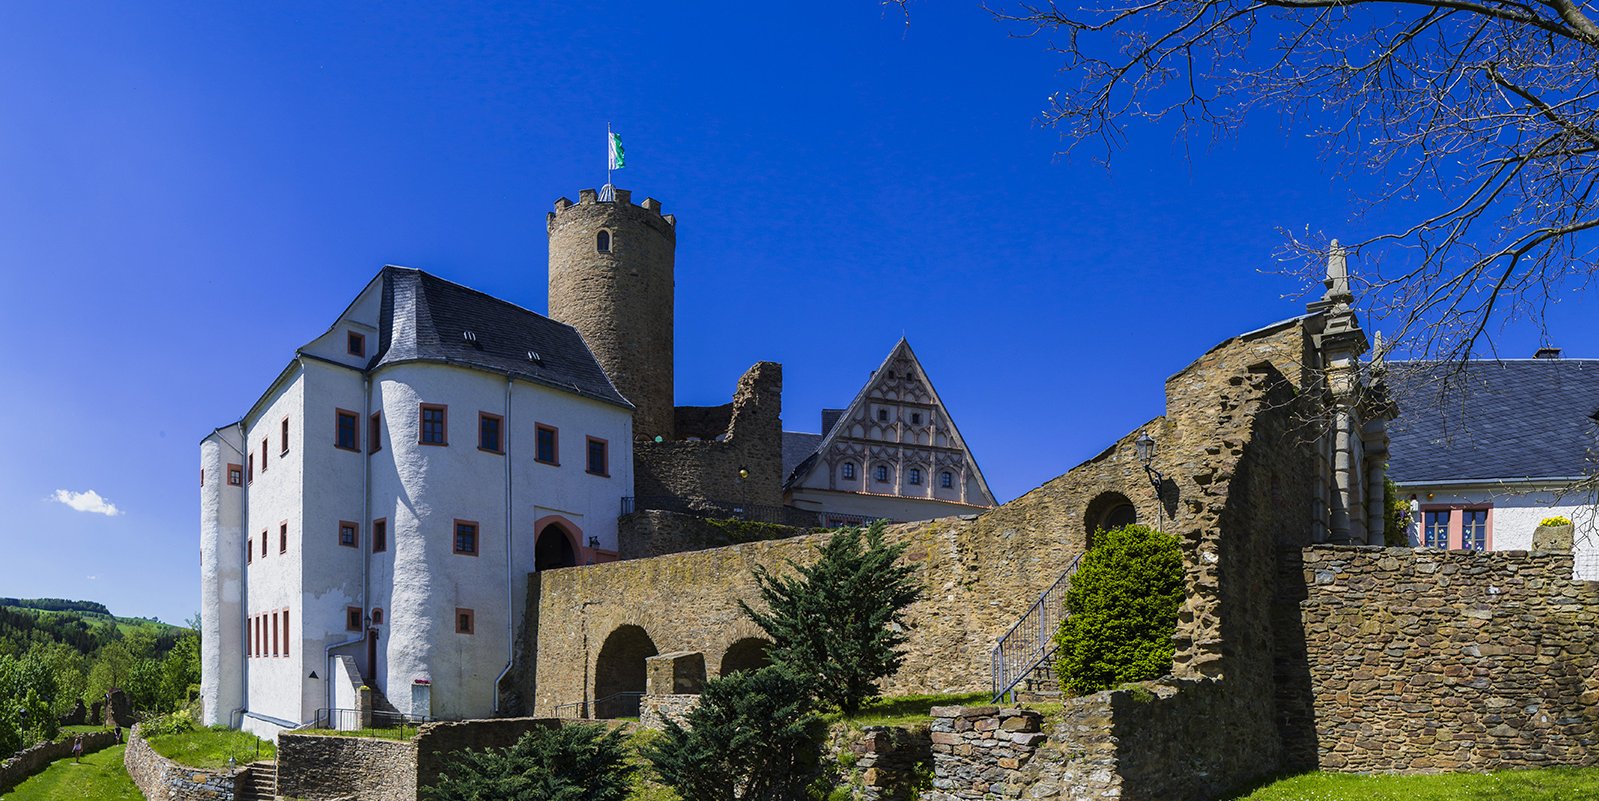 Burg Scharfenstein im Frühling mit Frontansicht